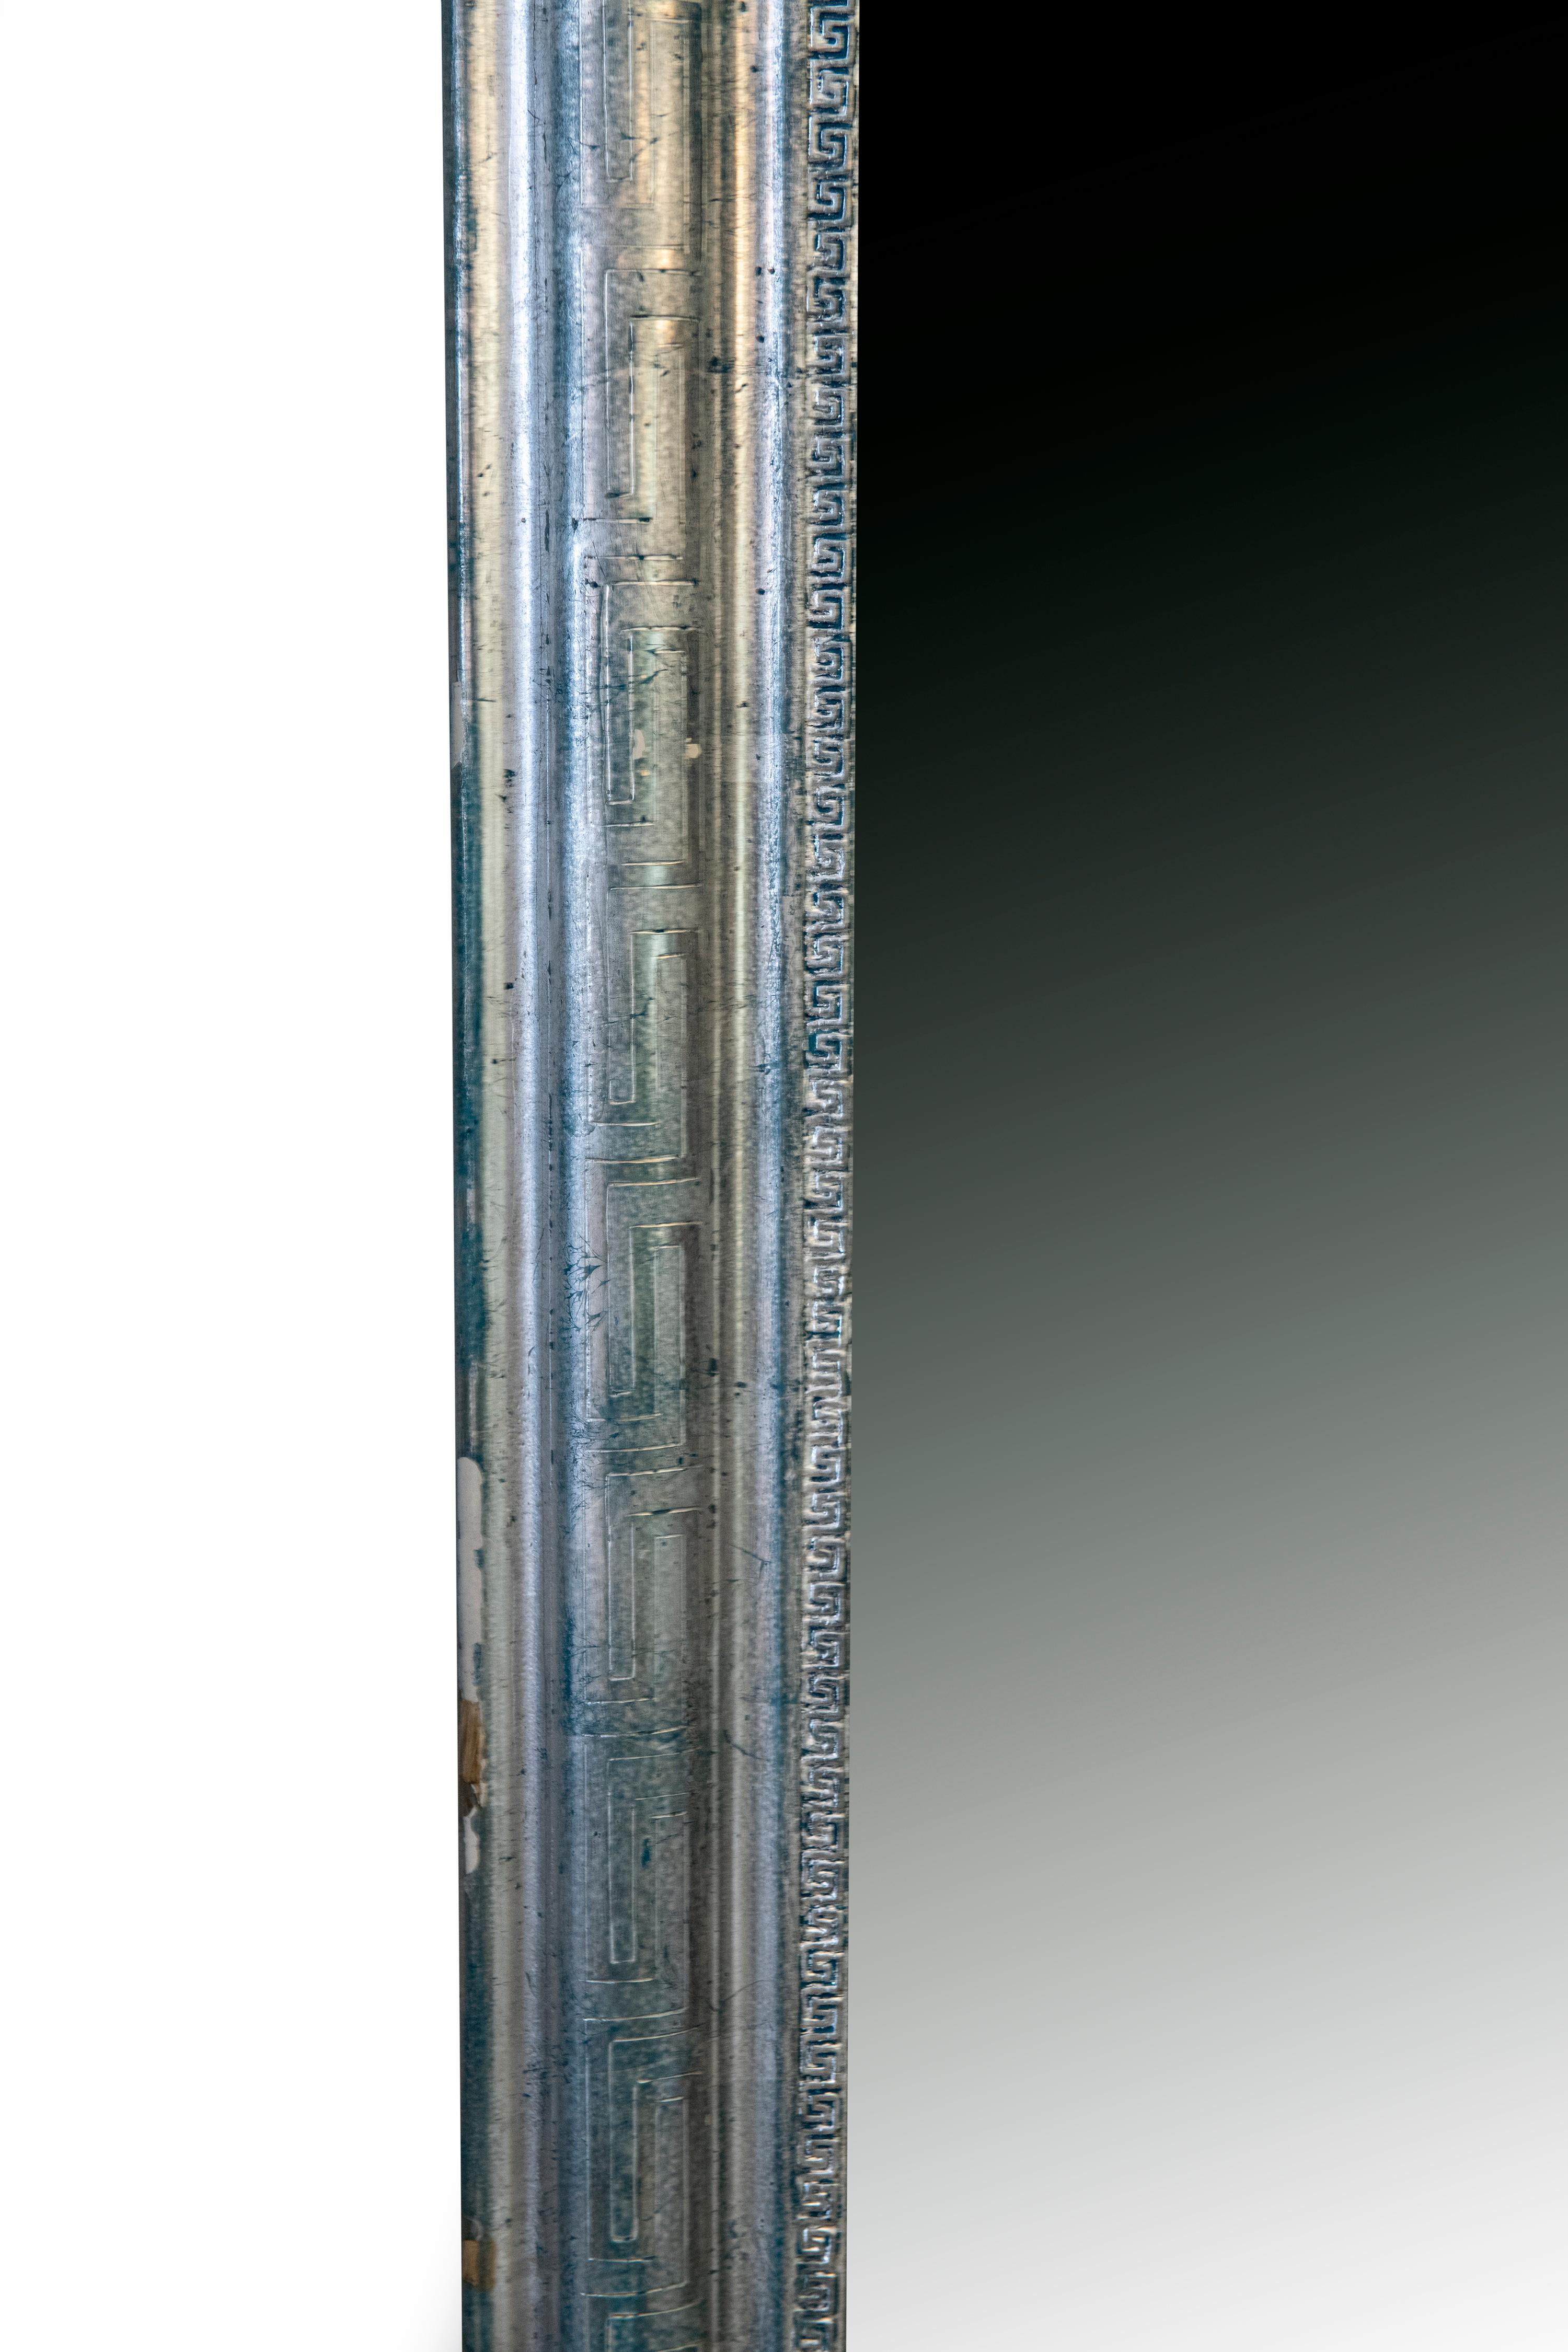 Miroir ancien d'époque Louis Philippe en argent sur bleu avec clé grecque sculptée et gravure de clé grecque sur le cadre.